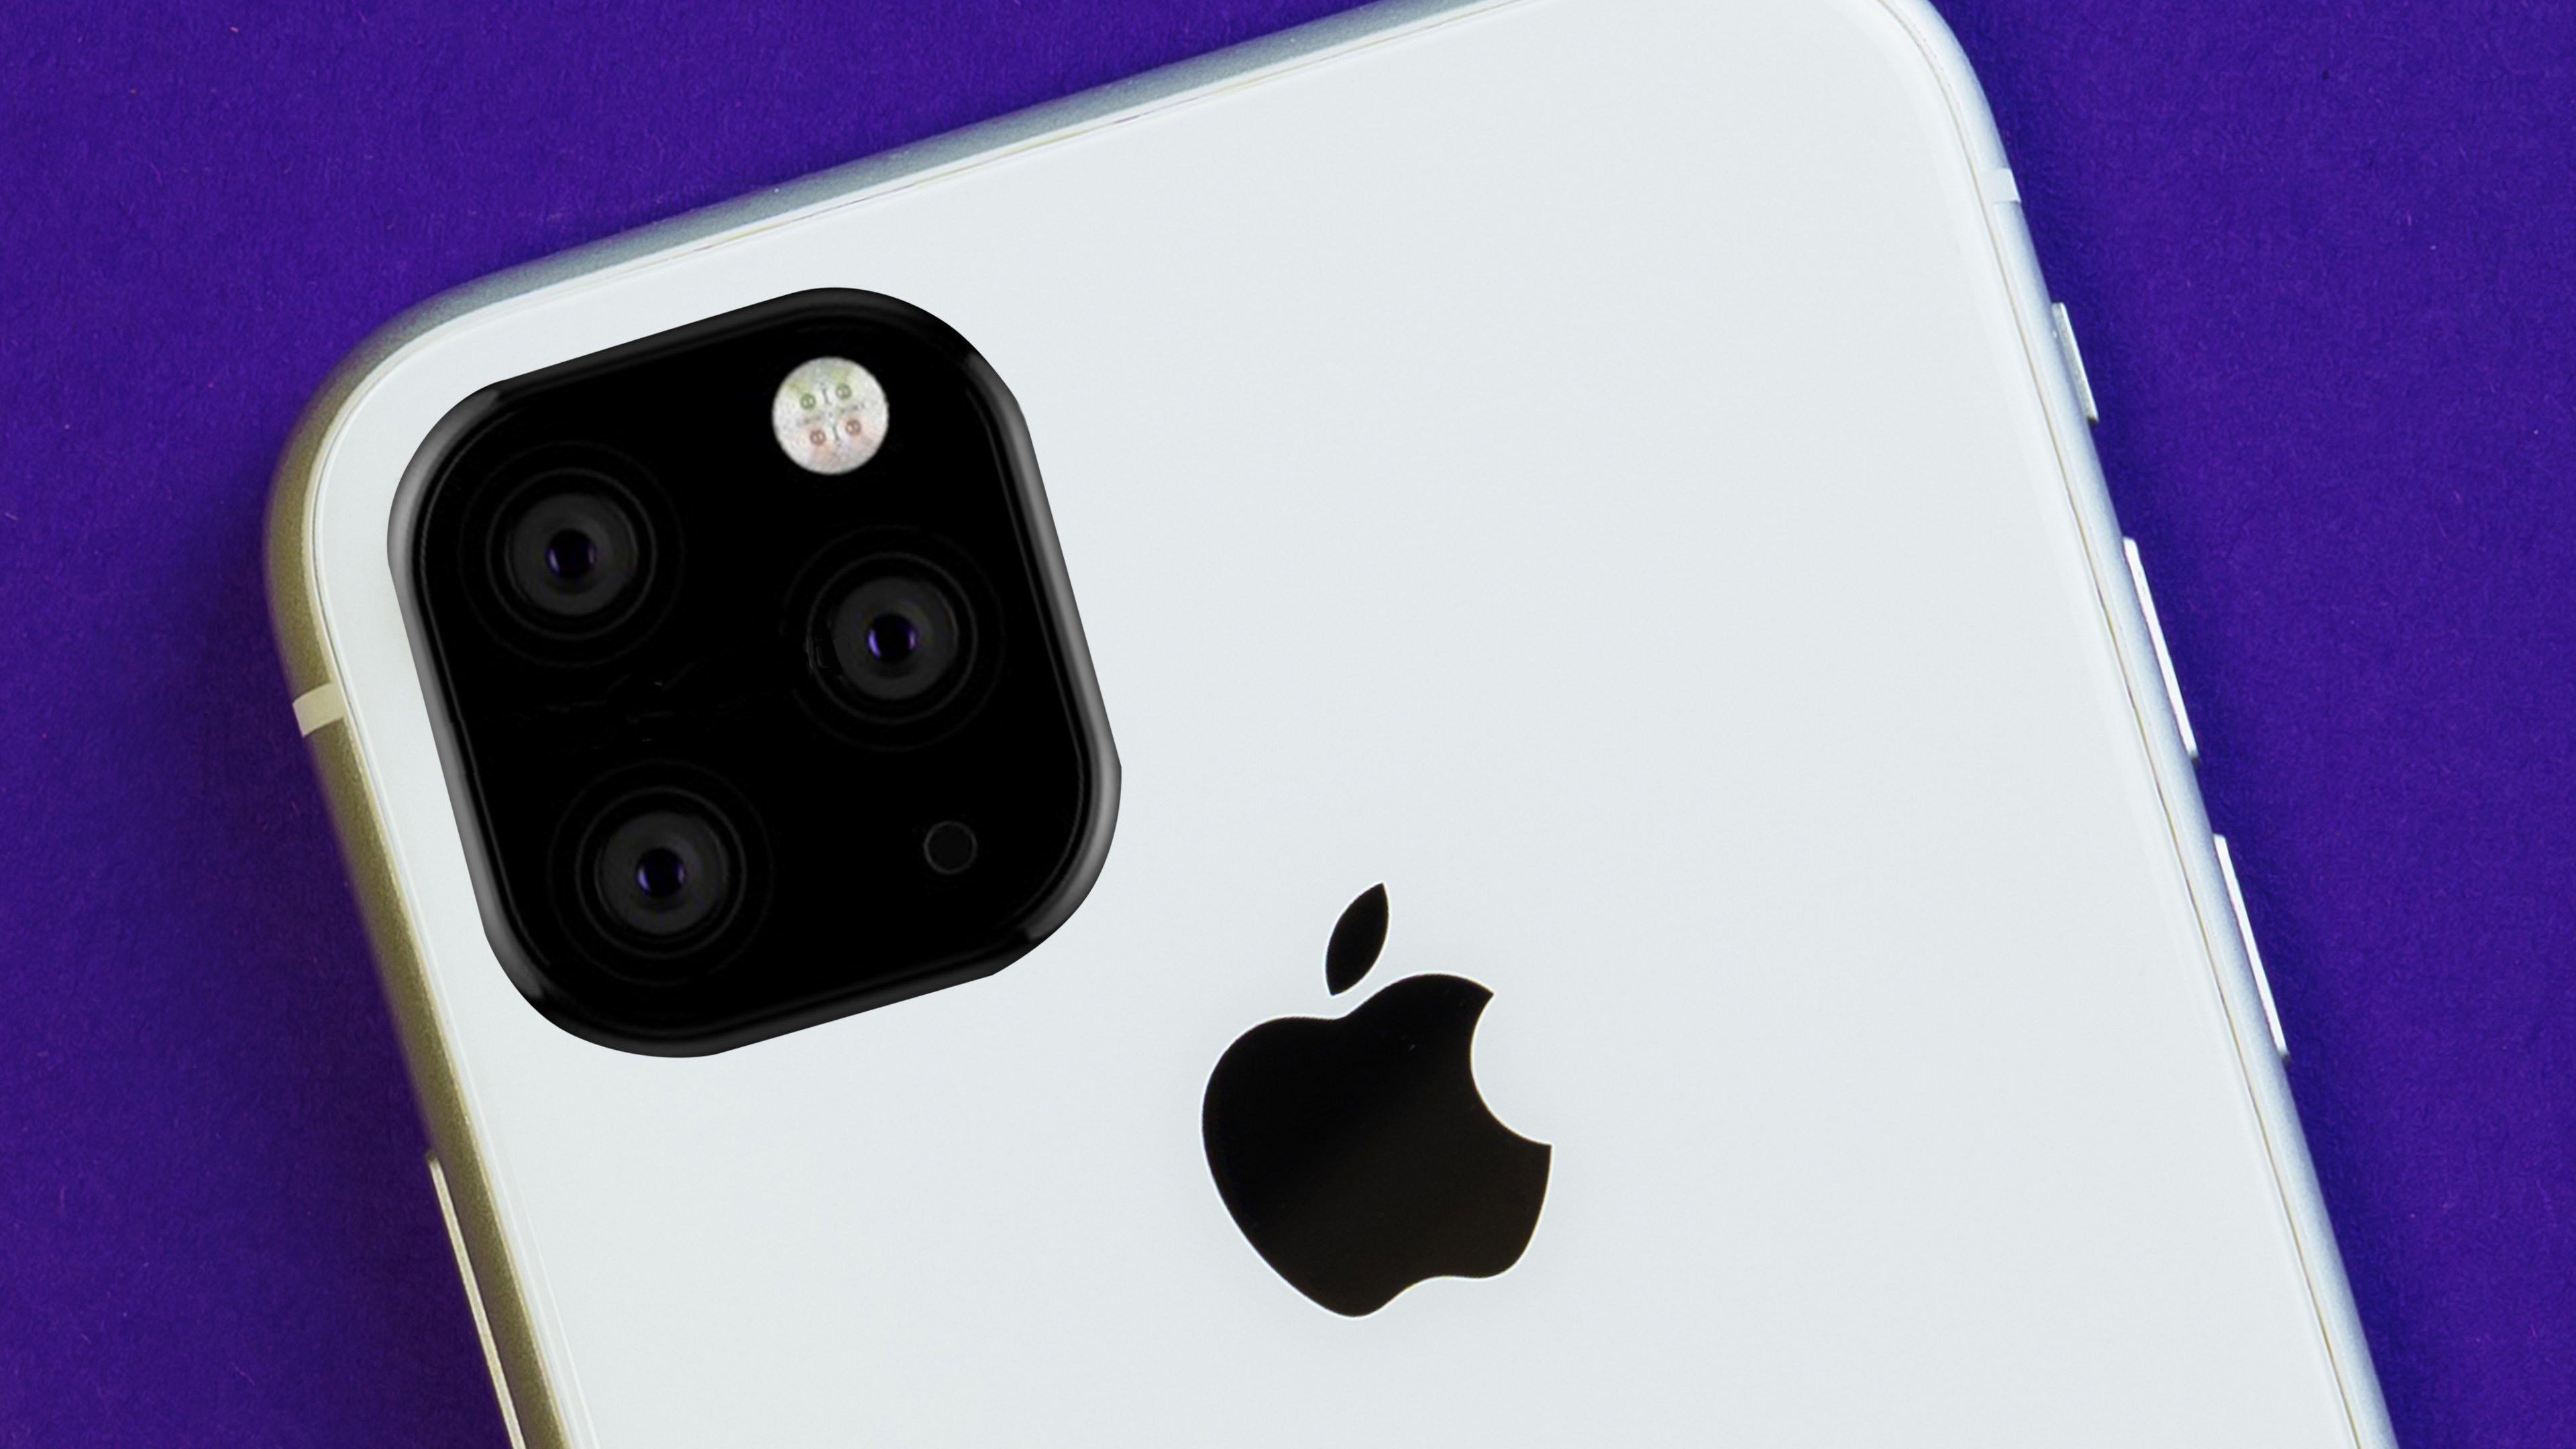 Sự khác biệt về camera giữa iPhone 11 và iPhone 11 Pro